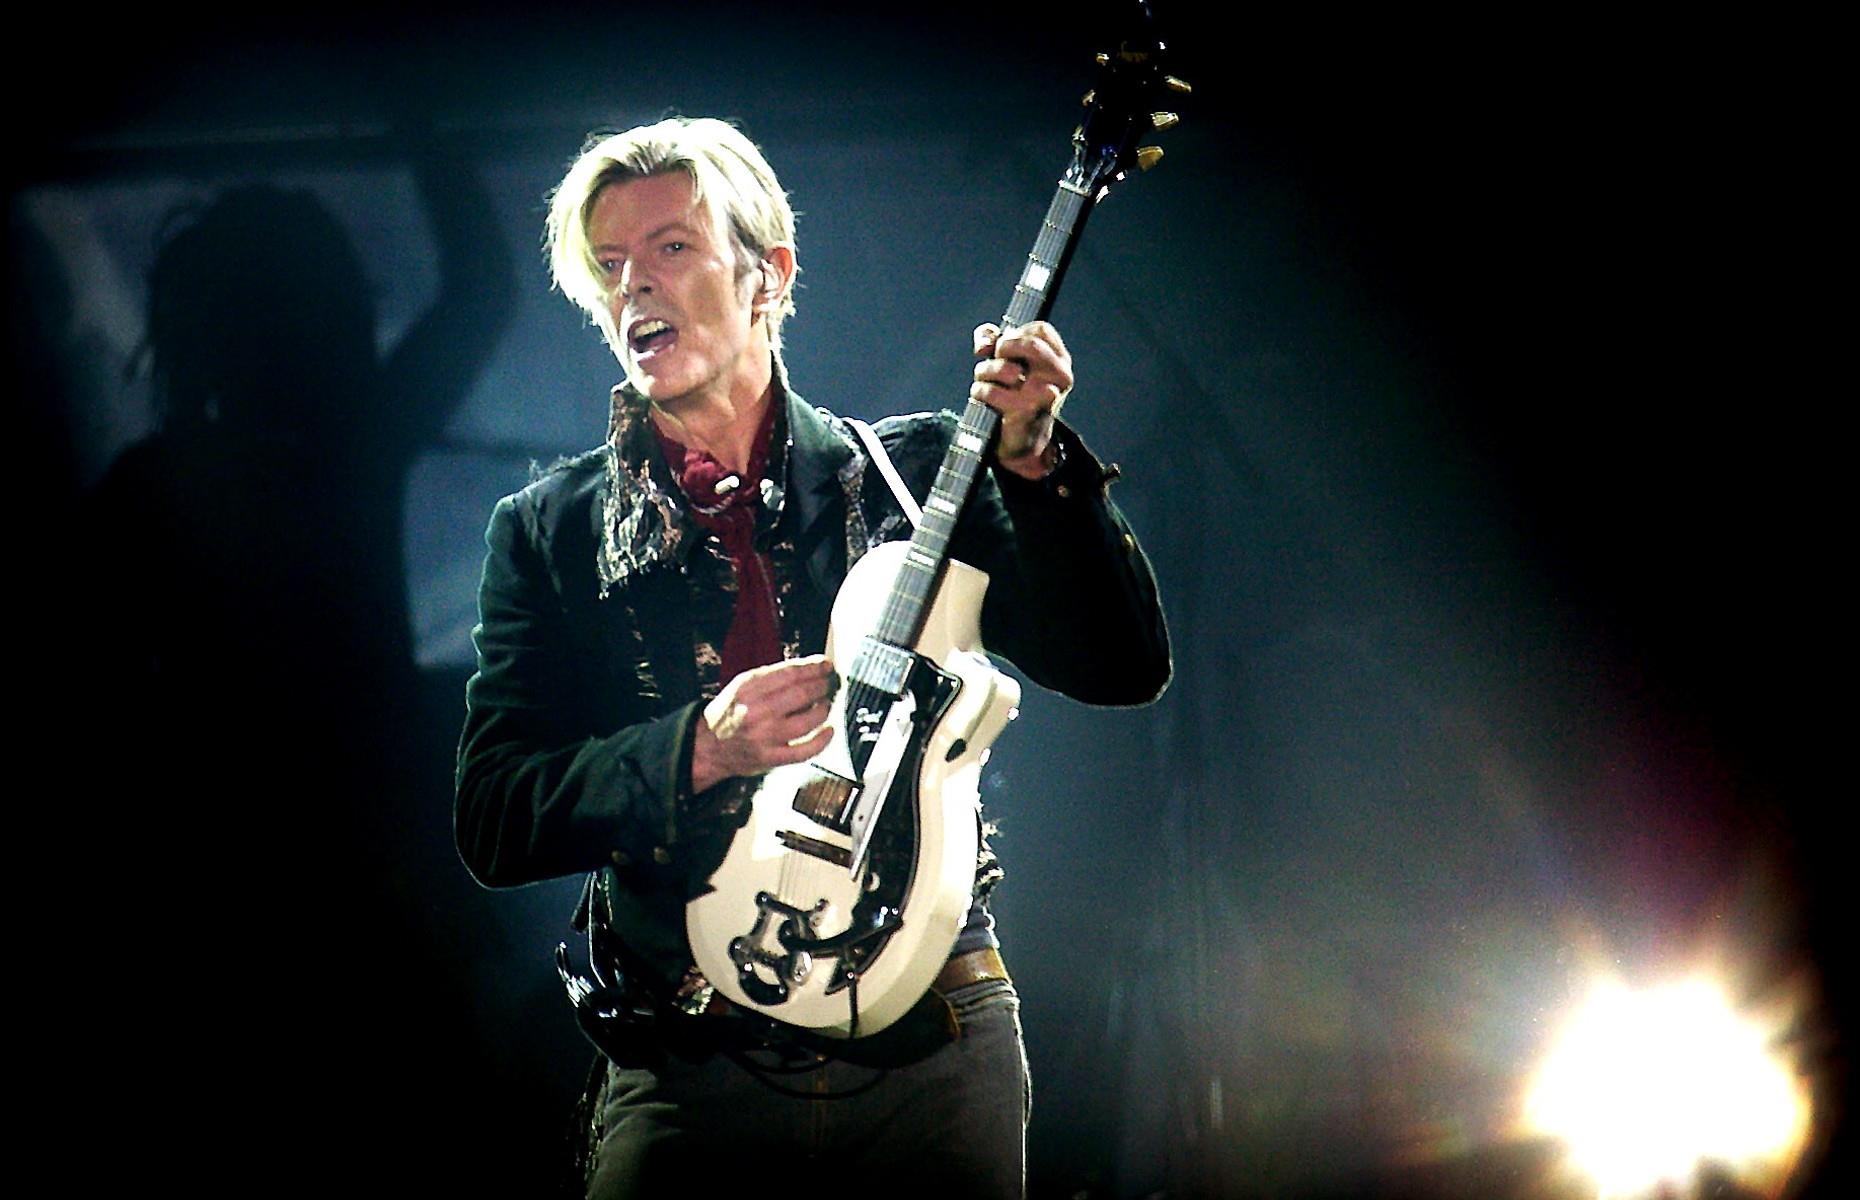 David Bowie – $250 million (£185m)